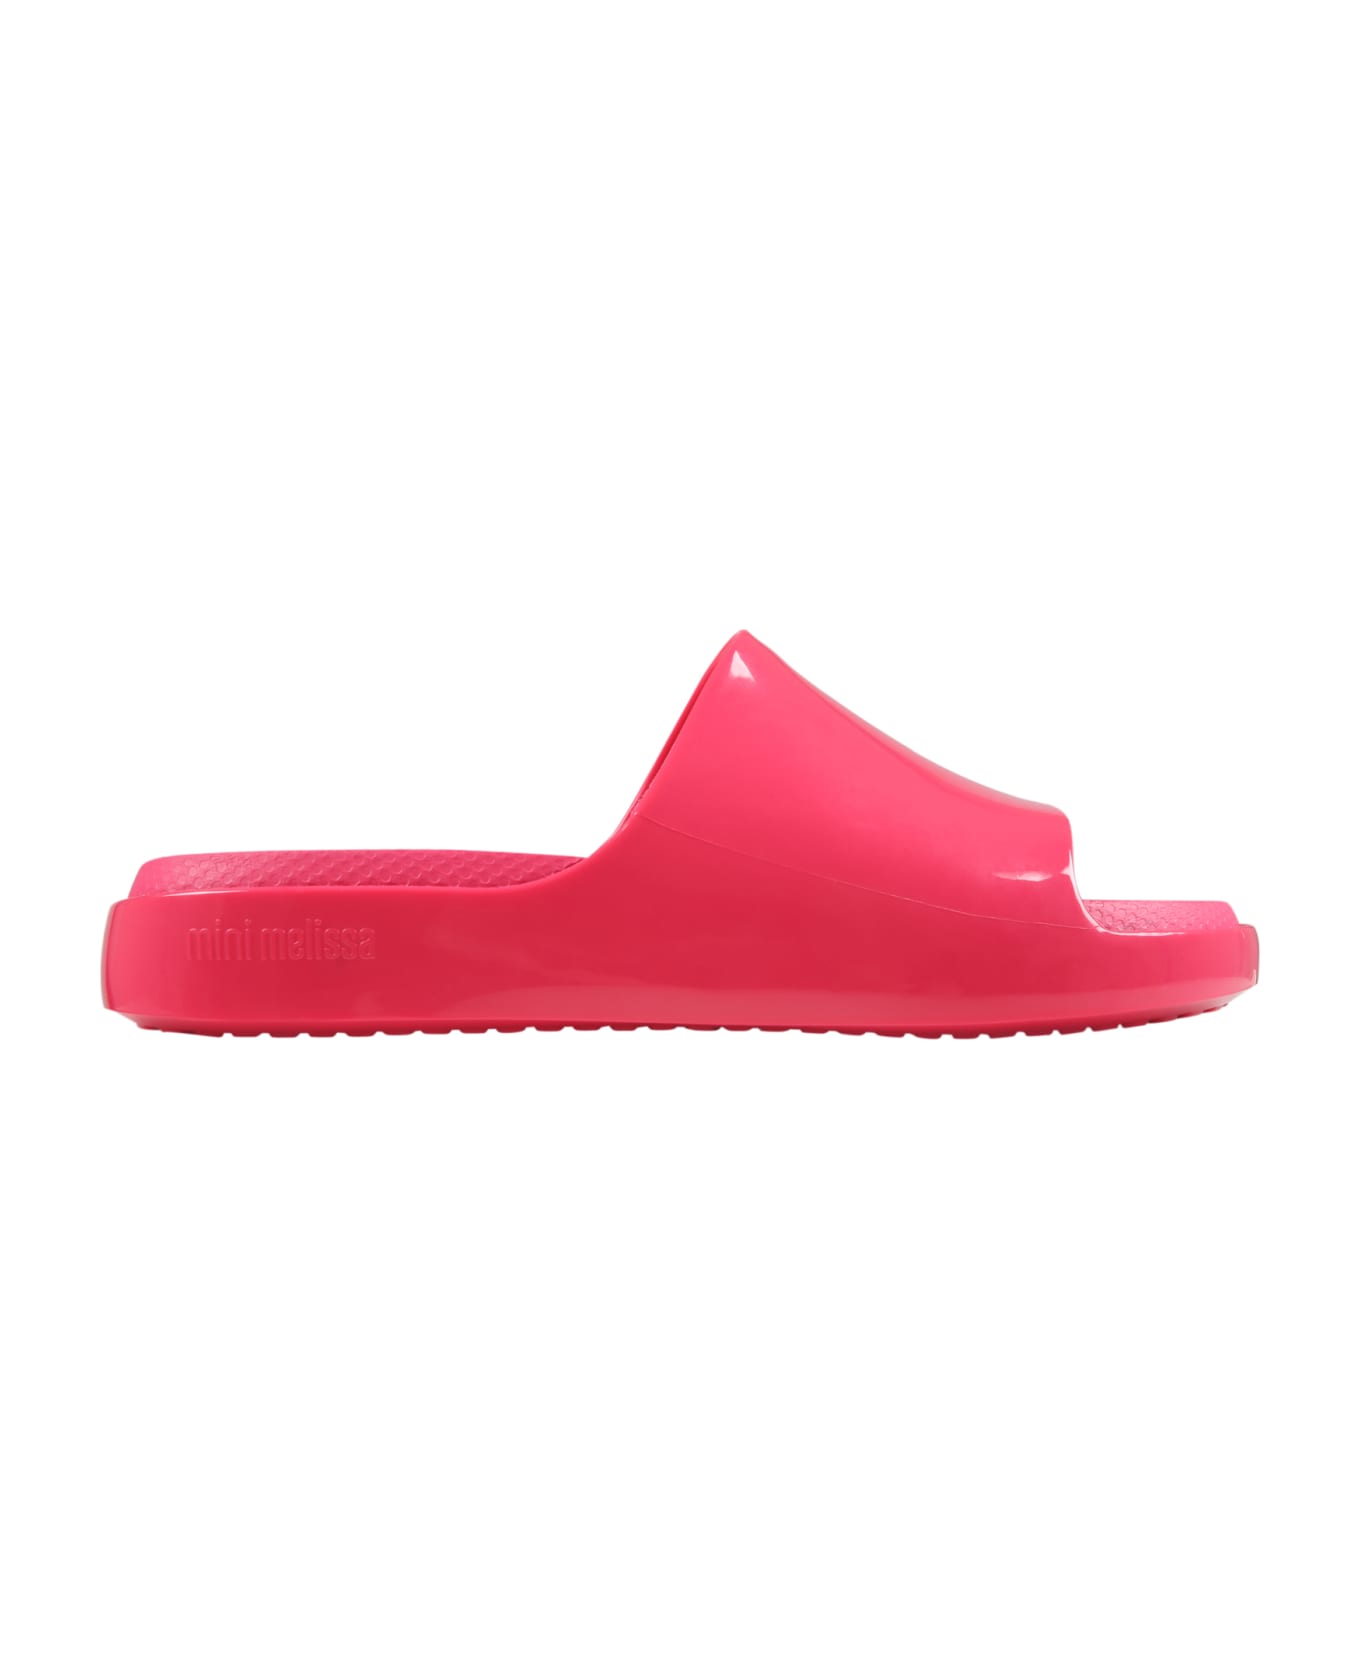 Melissa Fuchsia Sandals For Girl - Fuchsia シューズ